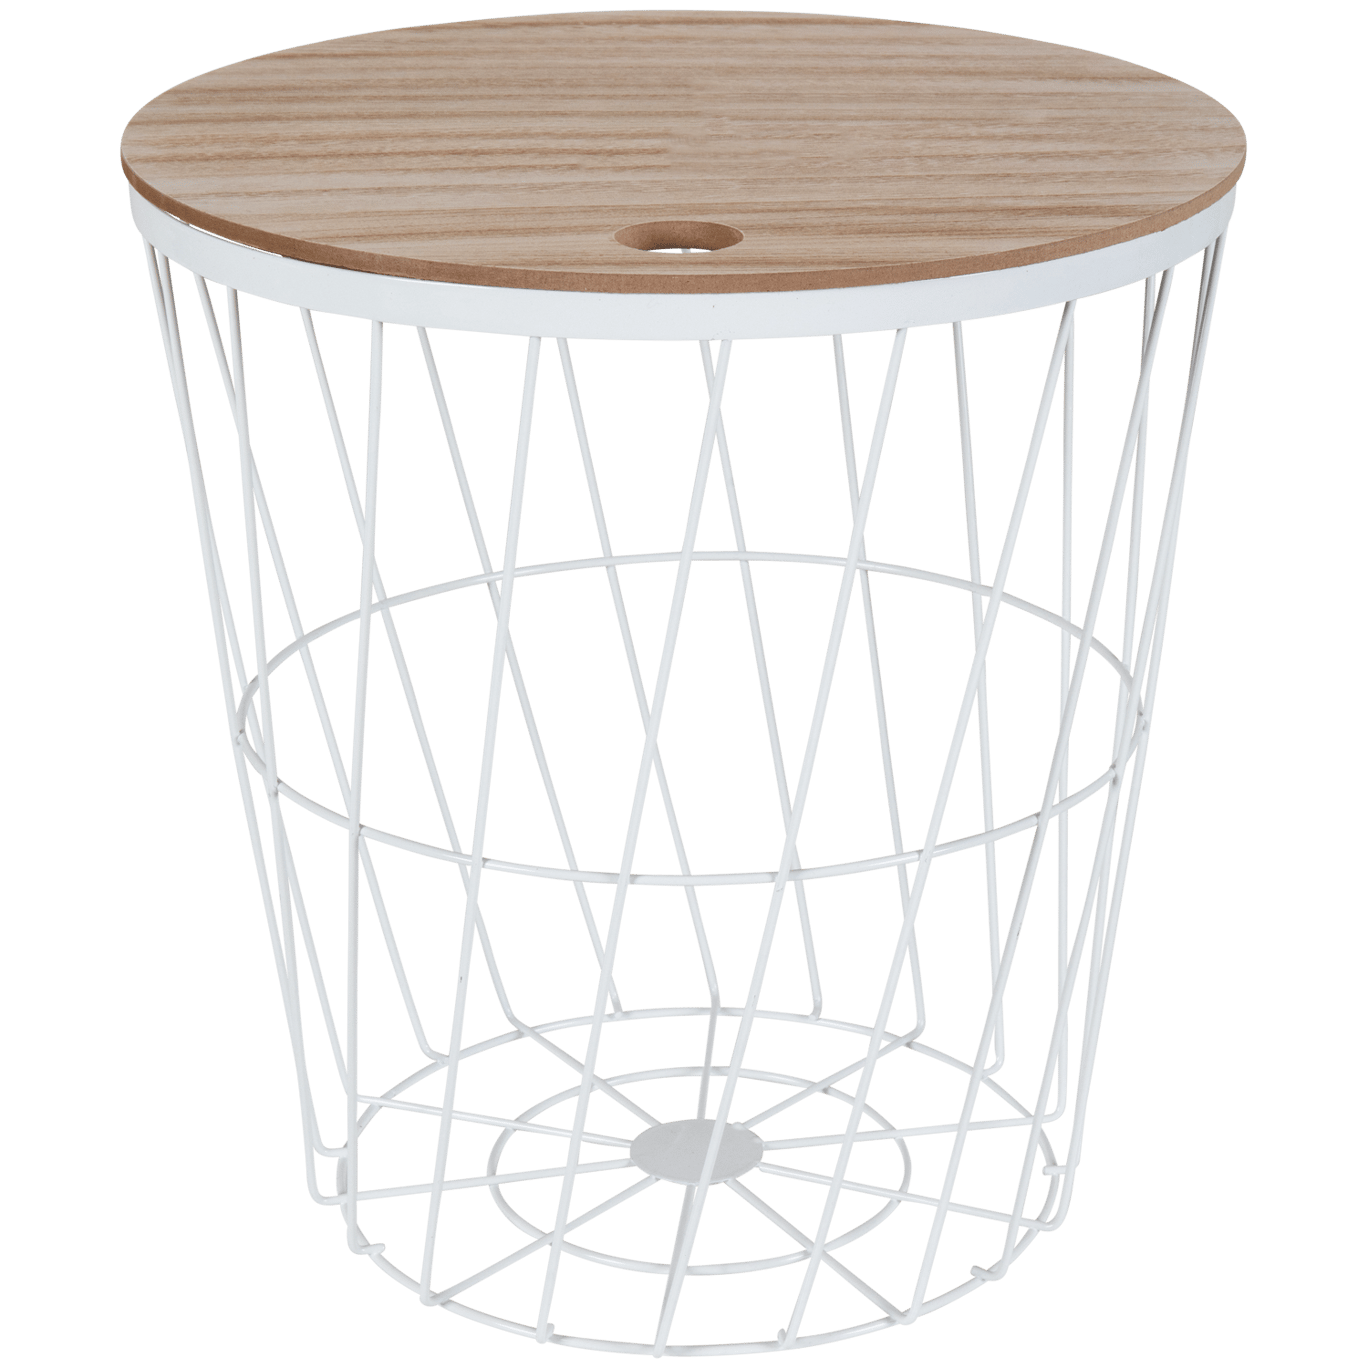 redonda diseño calado medidas: 40 x 35 cm cesta para periódicos SPRINGOS cesta de alambre con tapa mesa auxiliar alto x ancho negro y blanco, 40 x 35 x 35 cm 